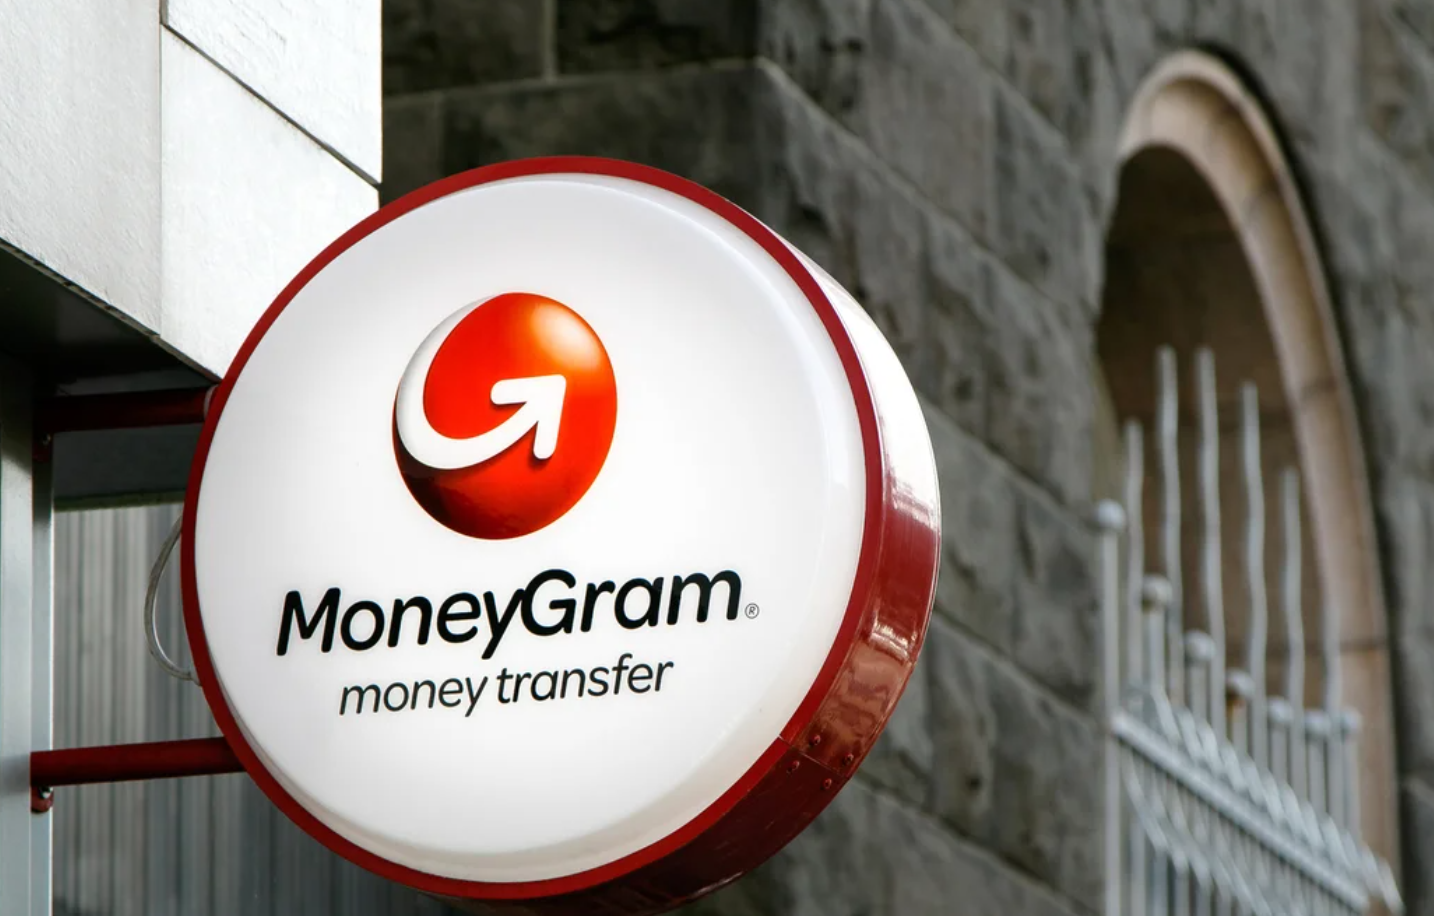 К сервису MoneyGram получат жители нескольких стран, включая Канаду, Филиппины, США и Кению